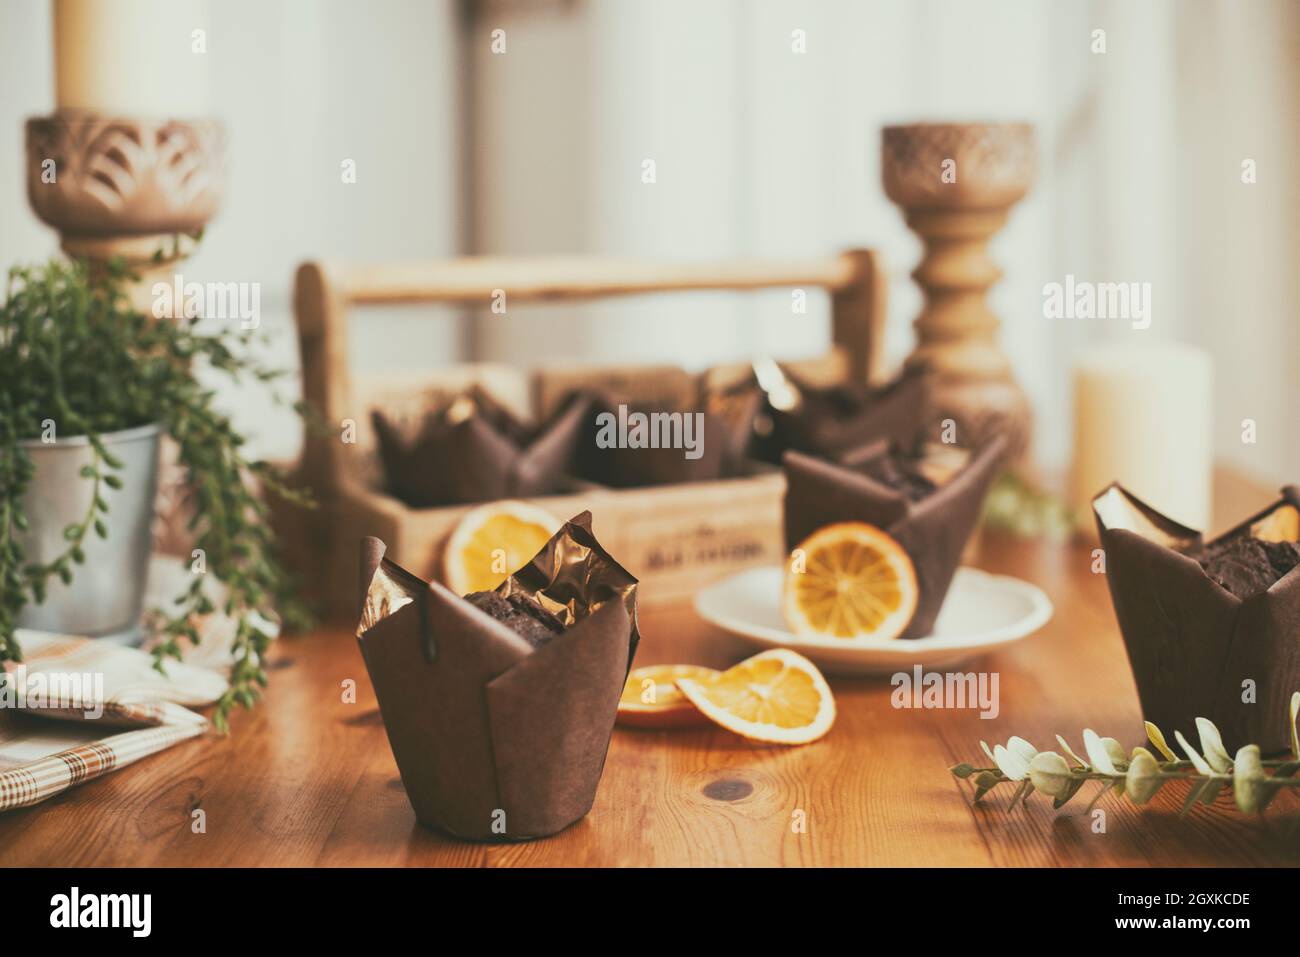 Schokolade und Orangenmuffins auf einem Holztisch Stockfoto